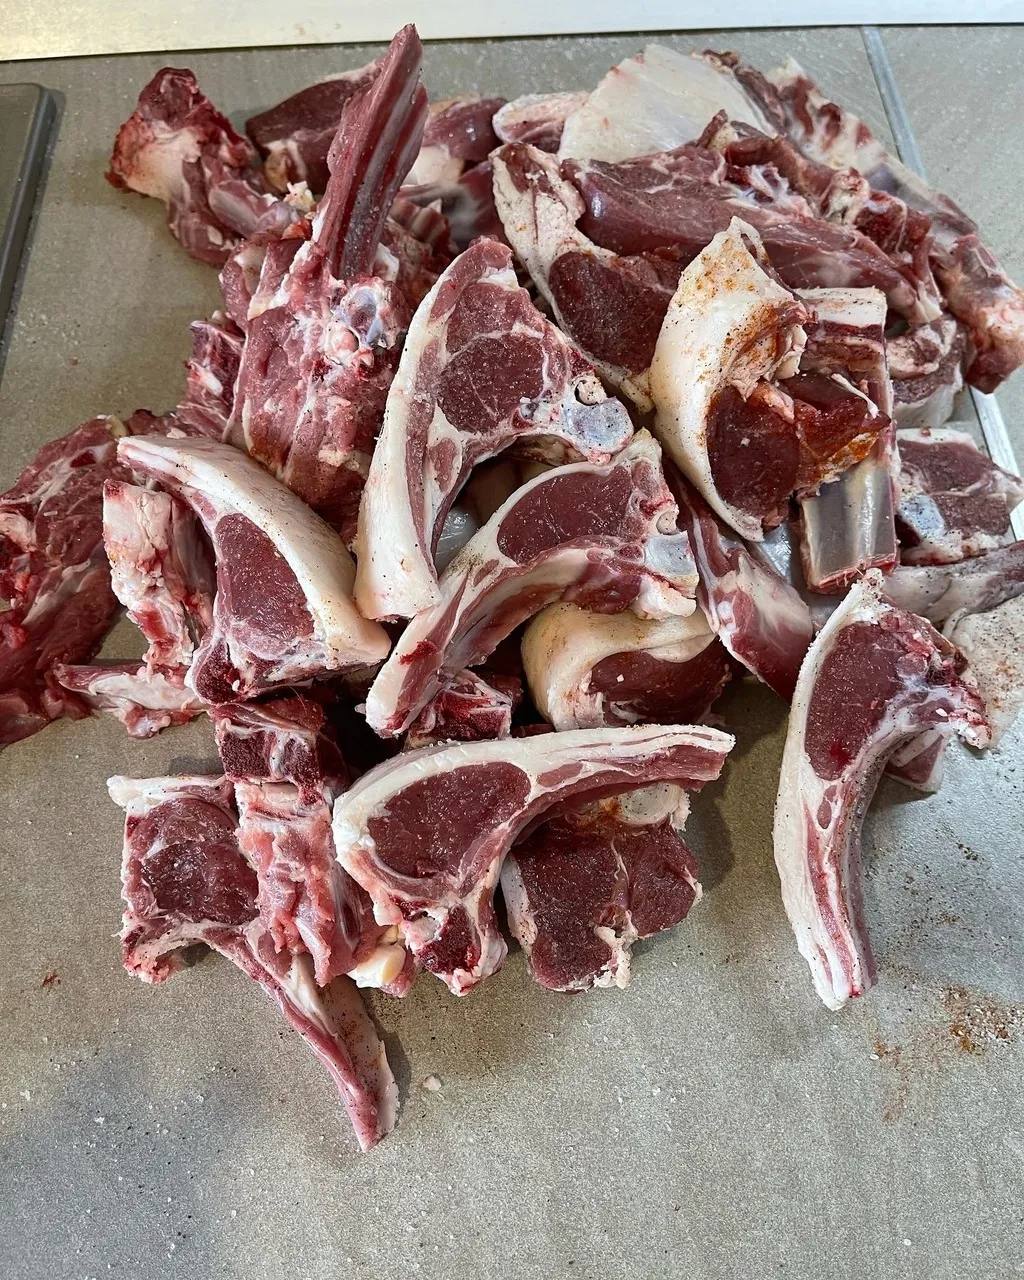 мясо баранины в Саратове и Саратовской области